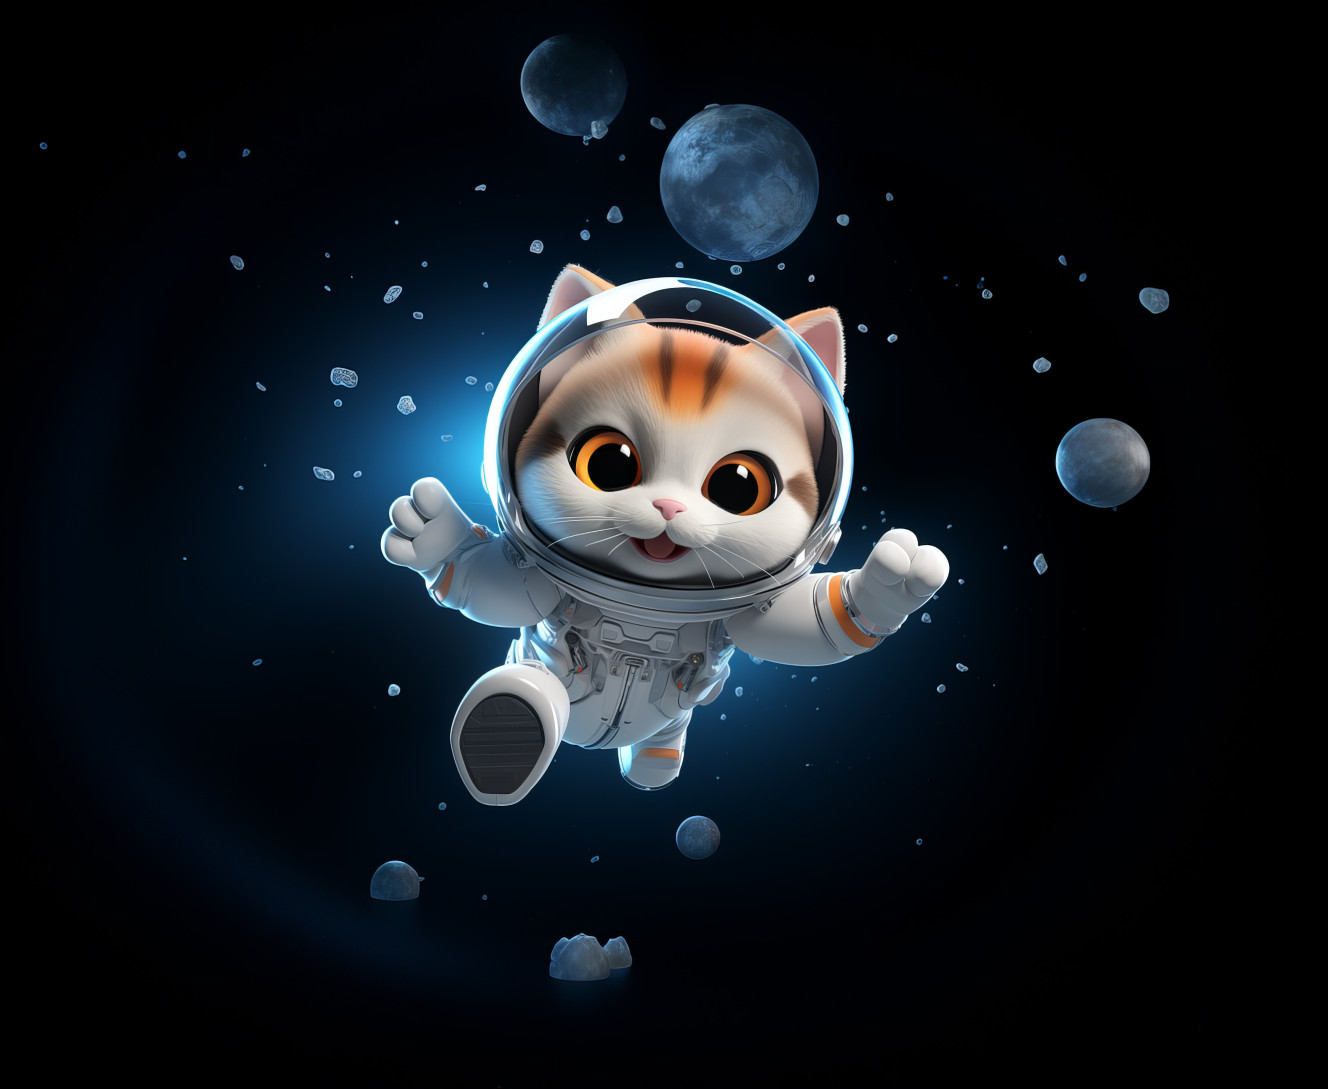  Cat in space